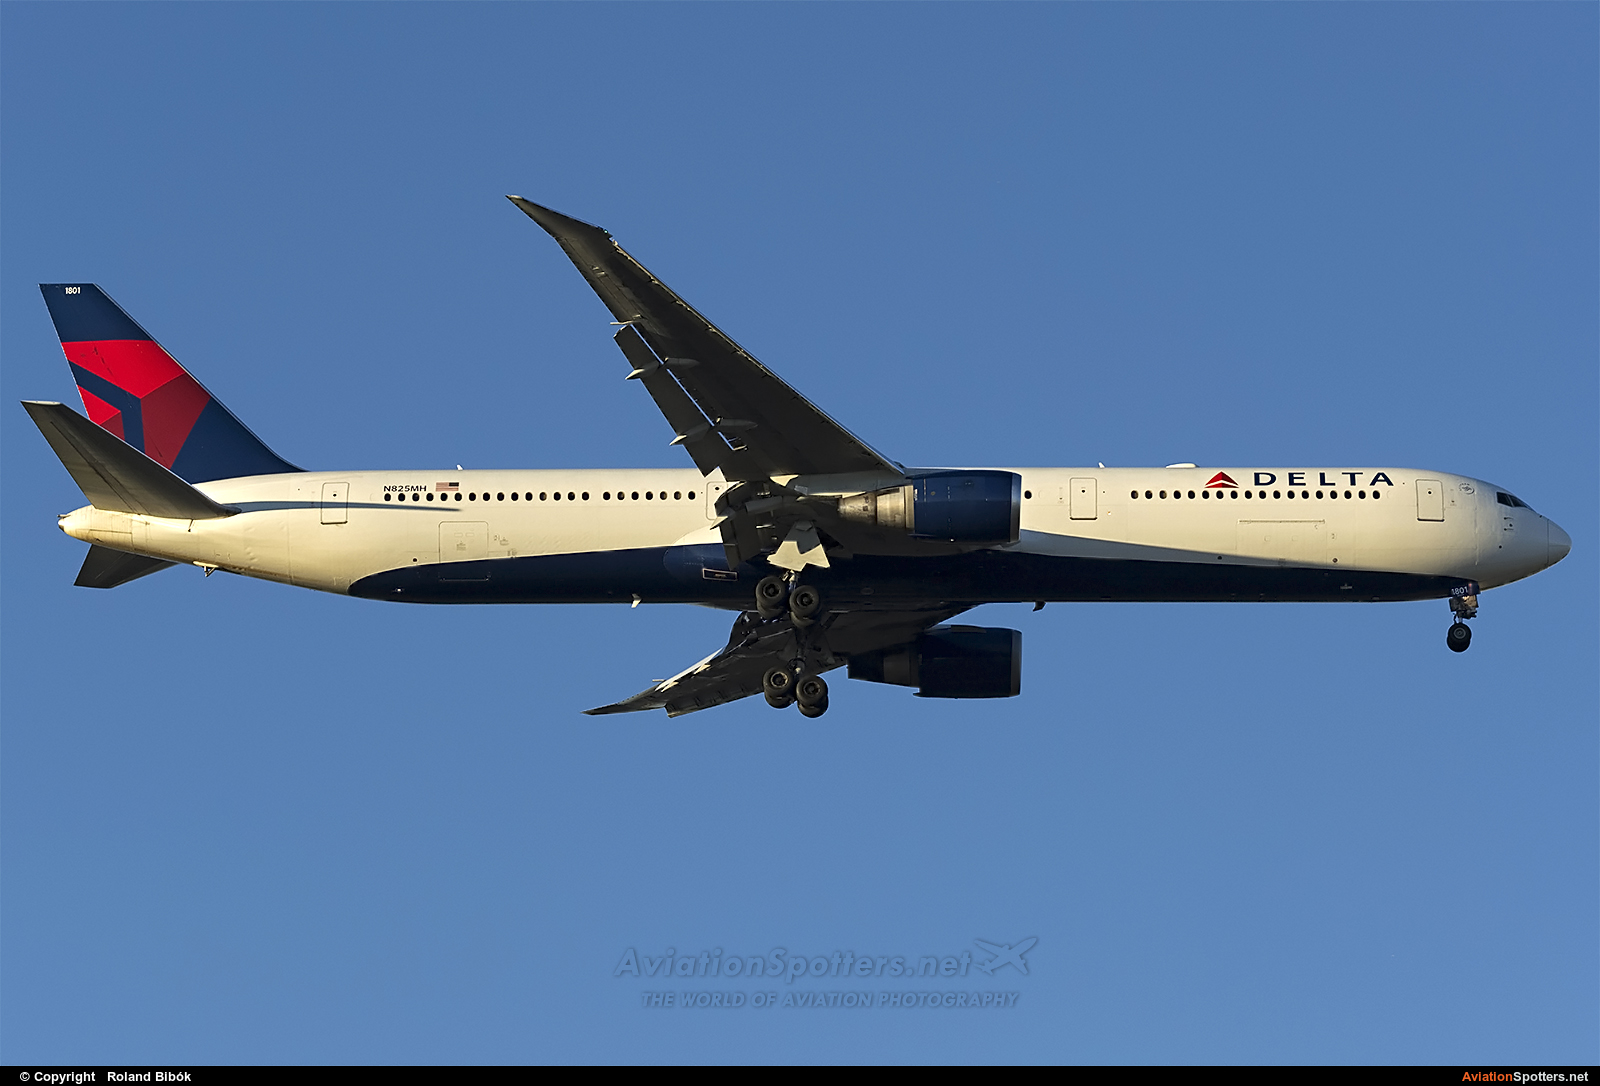 Delta Air Lines  -  767-400  (N825MH) By Roland Bibók (Roland Bibok)